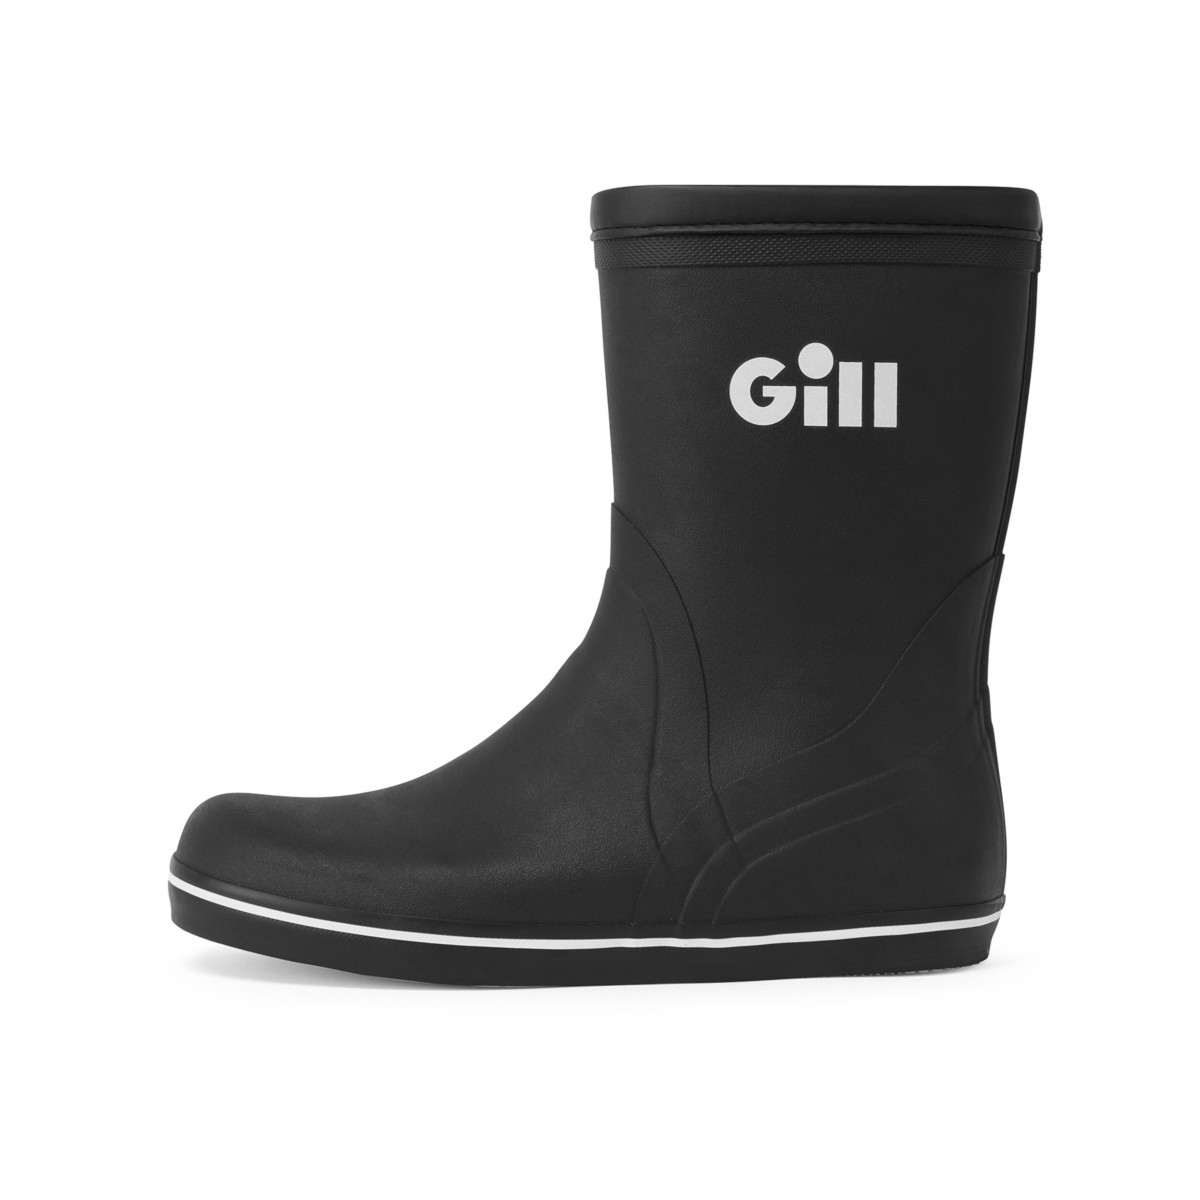 Gill Short Cruising Boot bottes en caoutchouc unisexe noir, taille 45